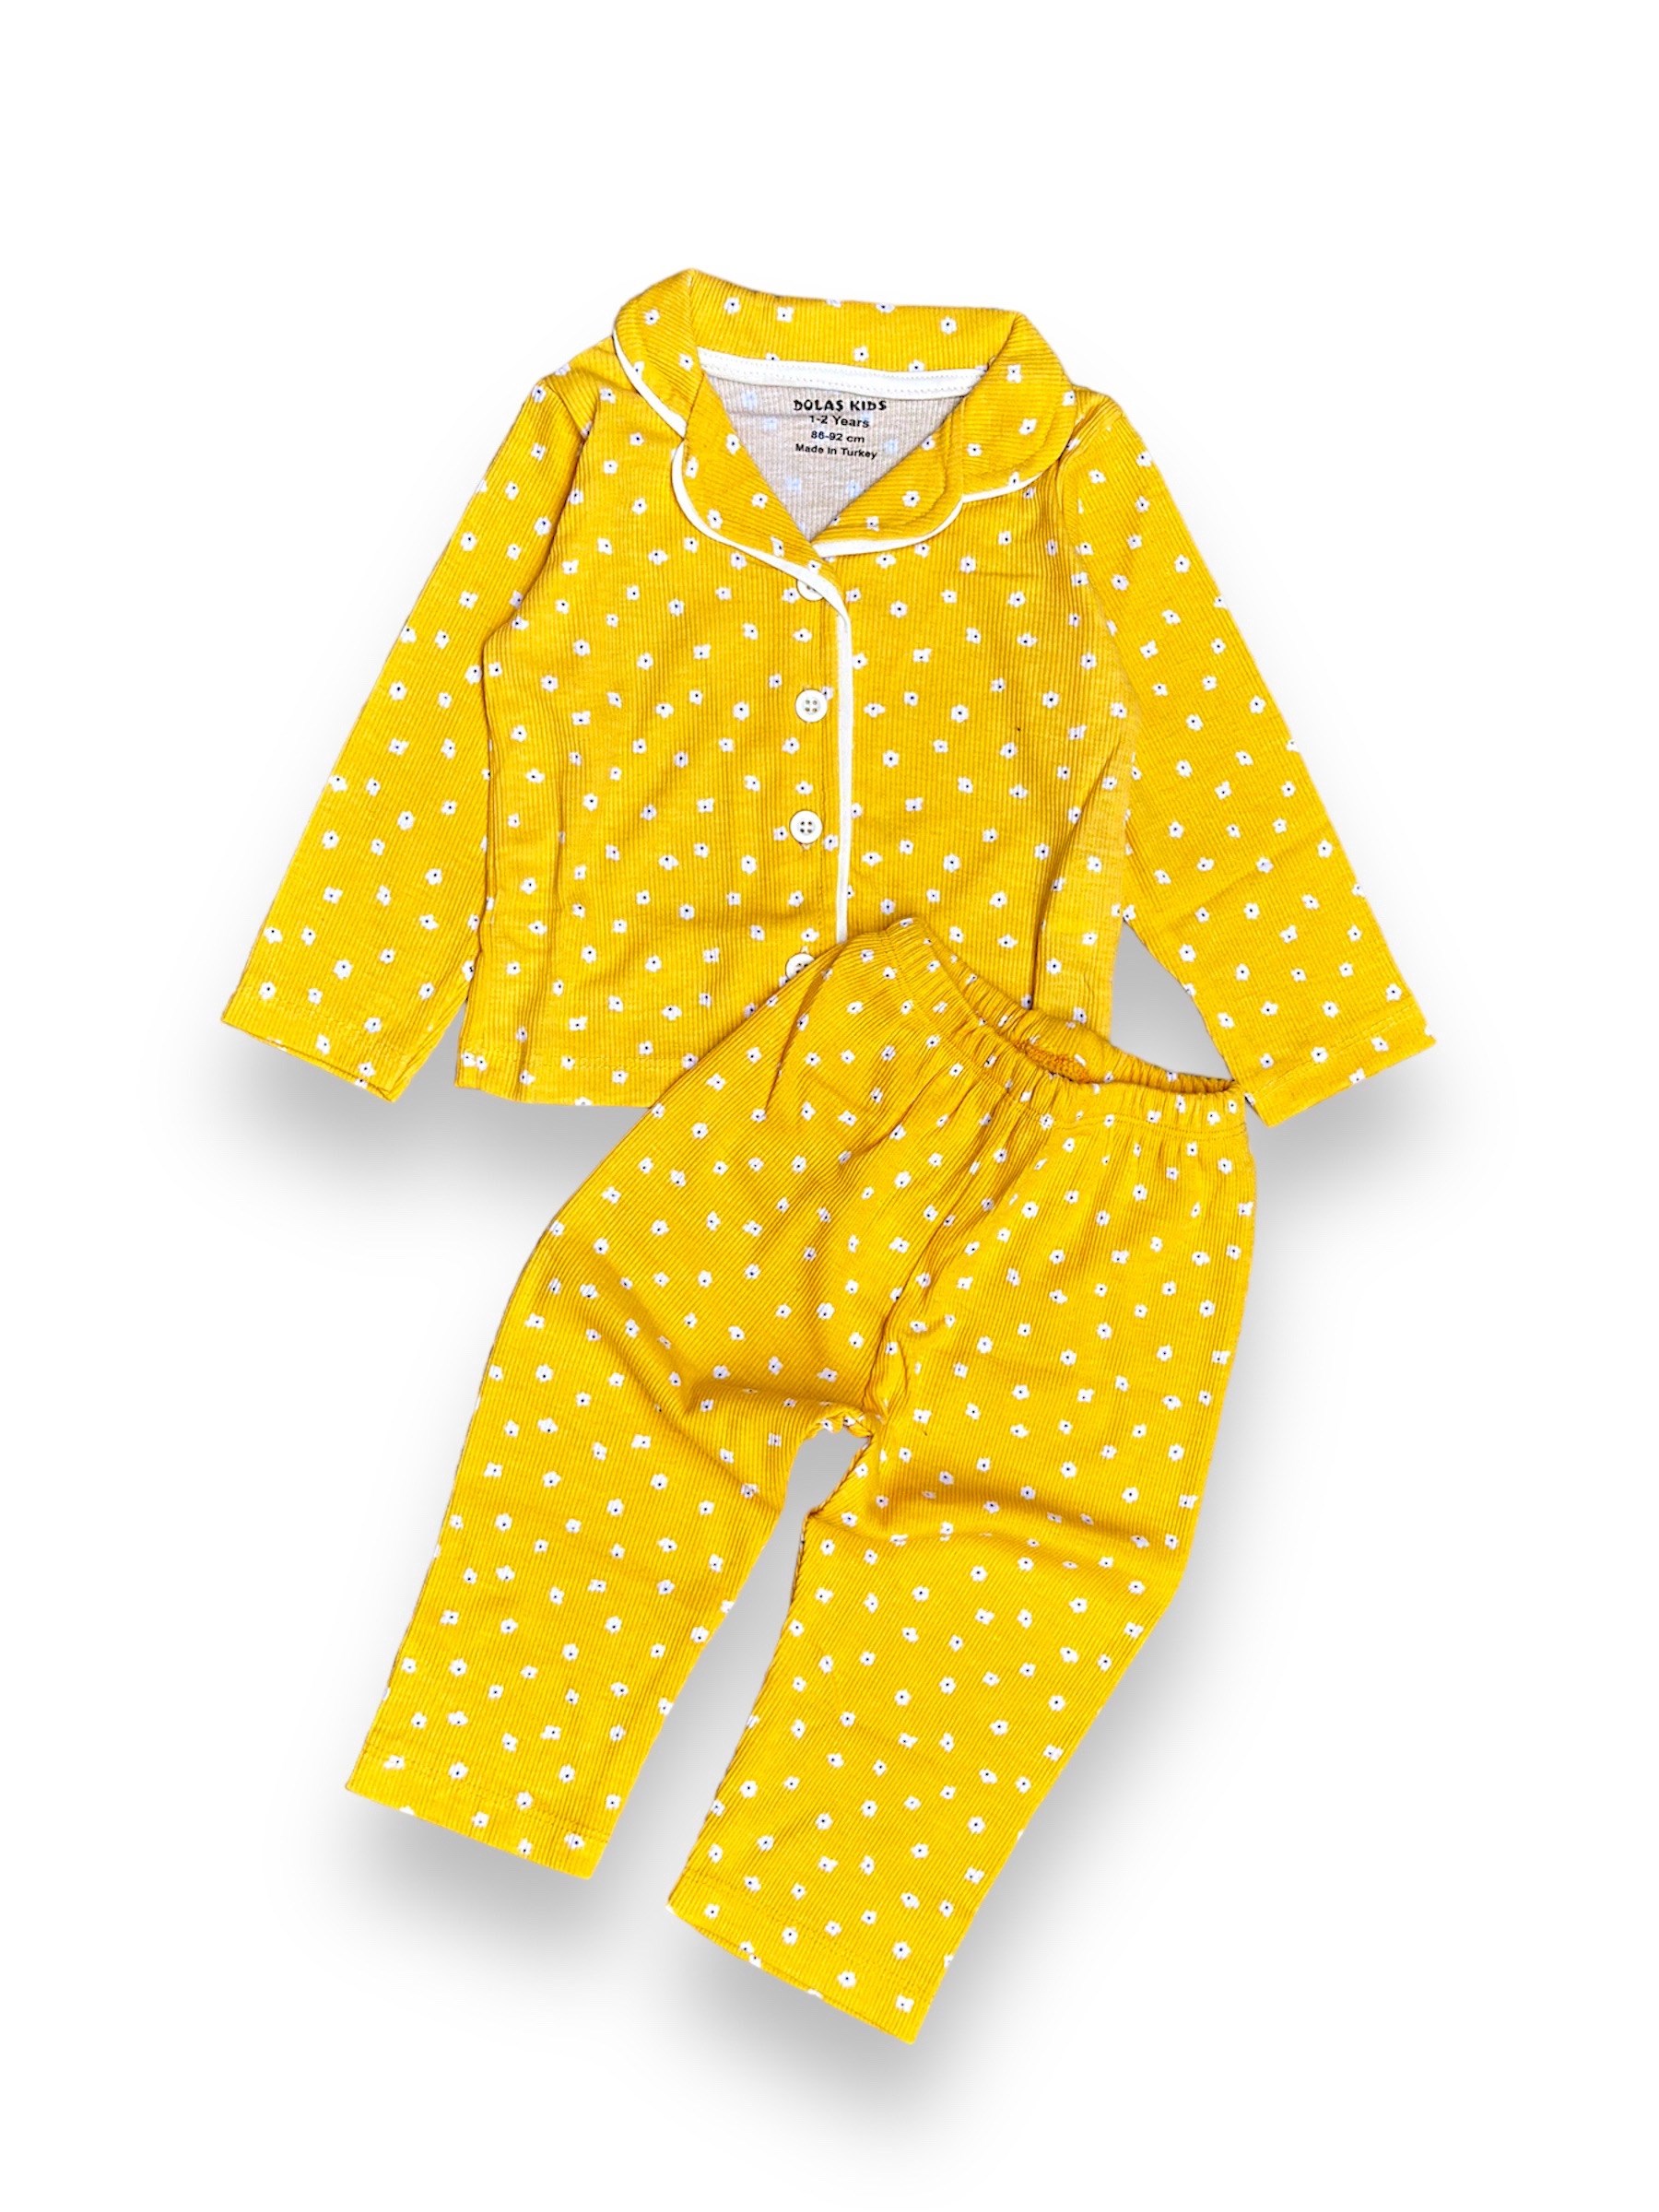 Çocuk Pijama Takımı Papatya Baskılı Sarı 1-4 Yaş Arası 